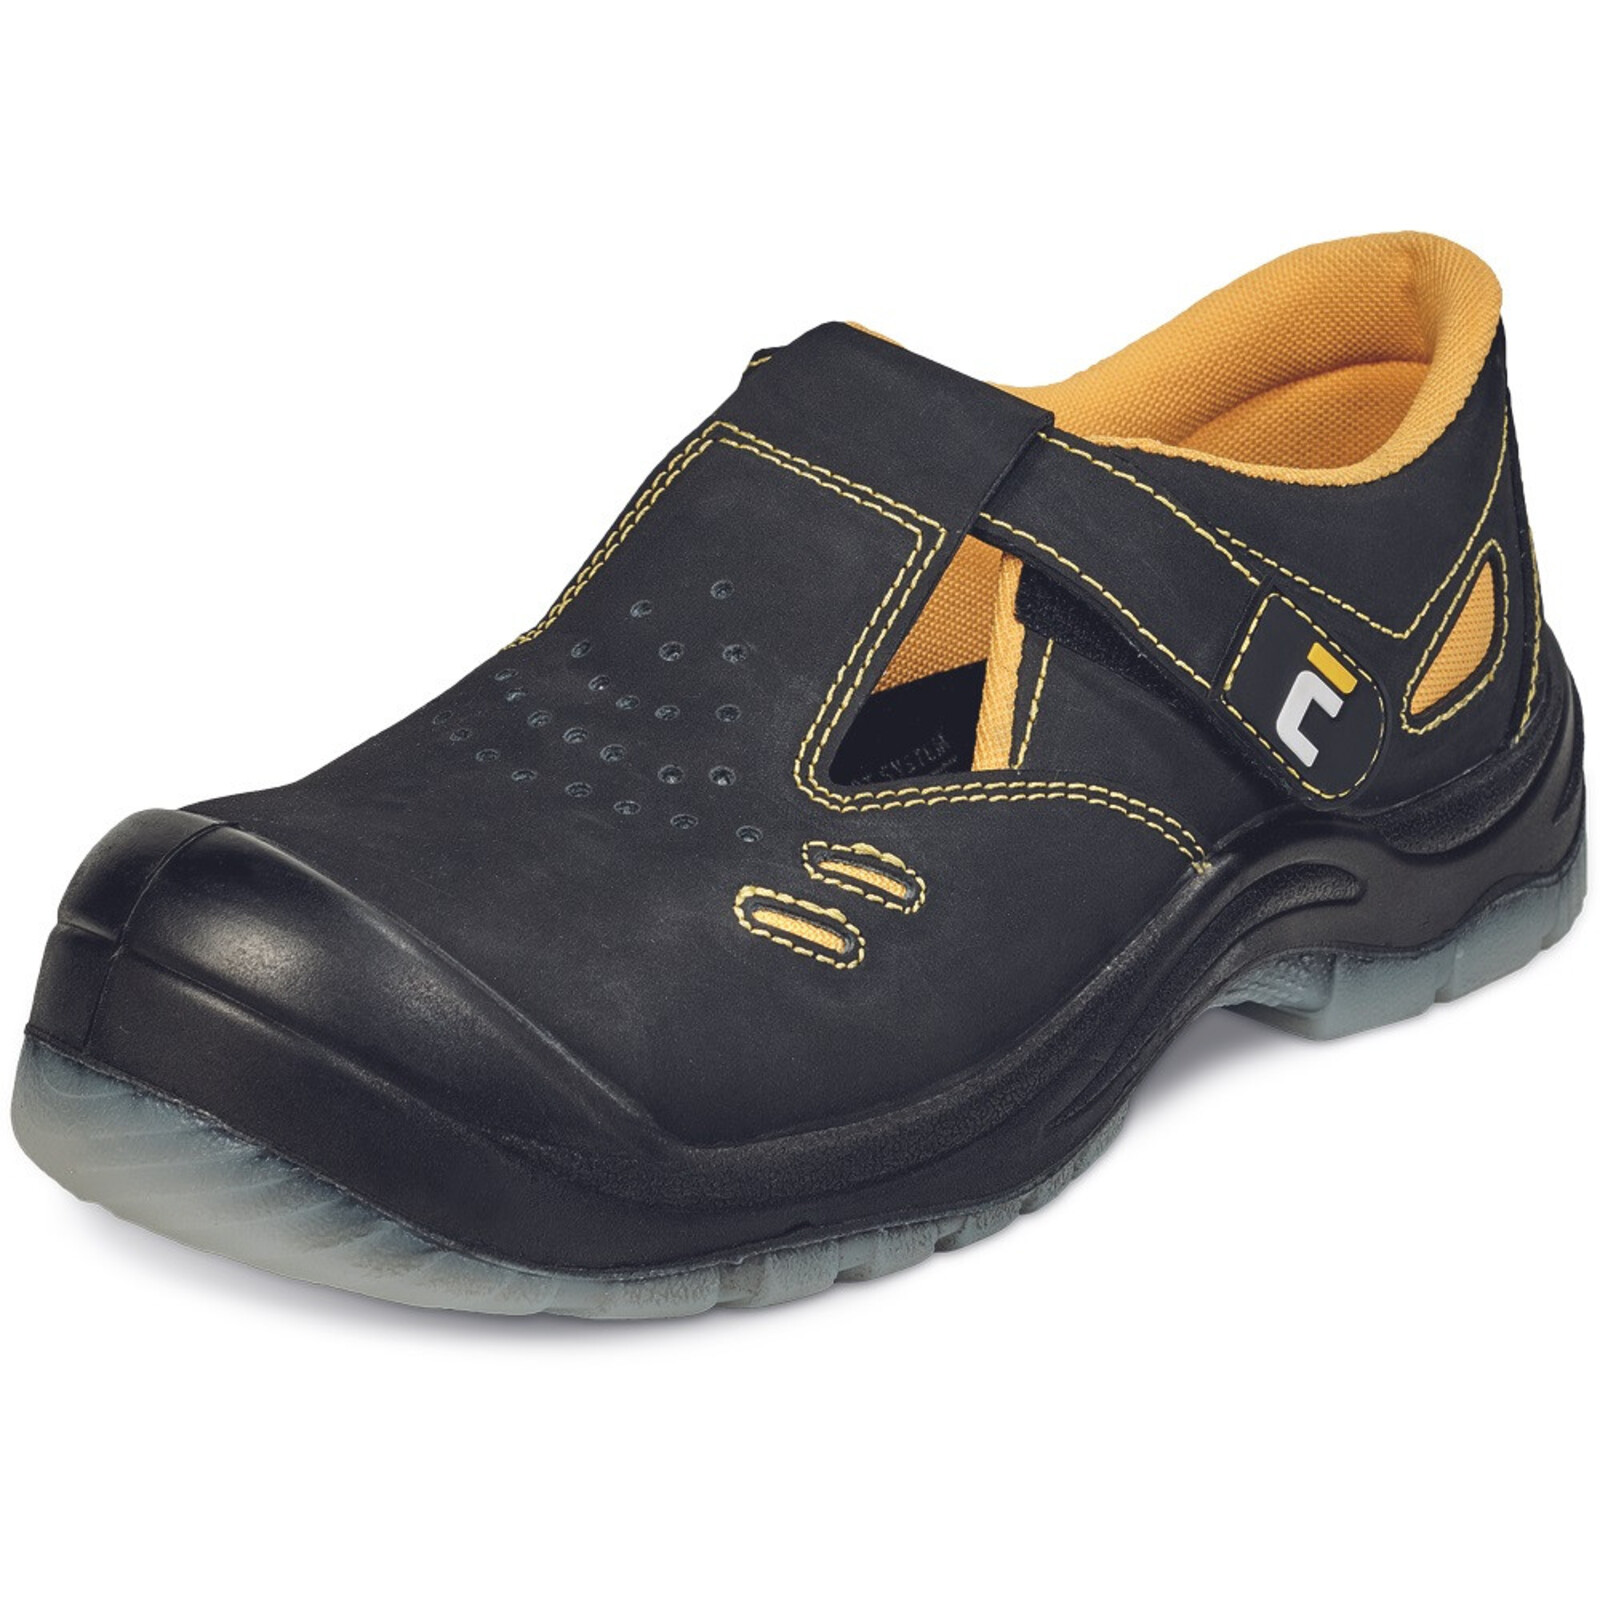 Bezpečnostné sandále Cerva BK TPU MF S1P SRC - veľkosť: 39, farba: čierna/žltá